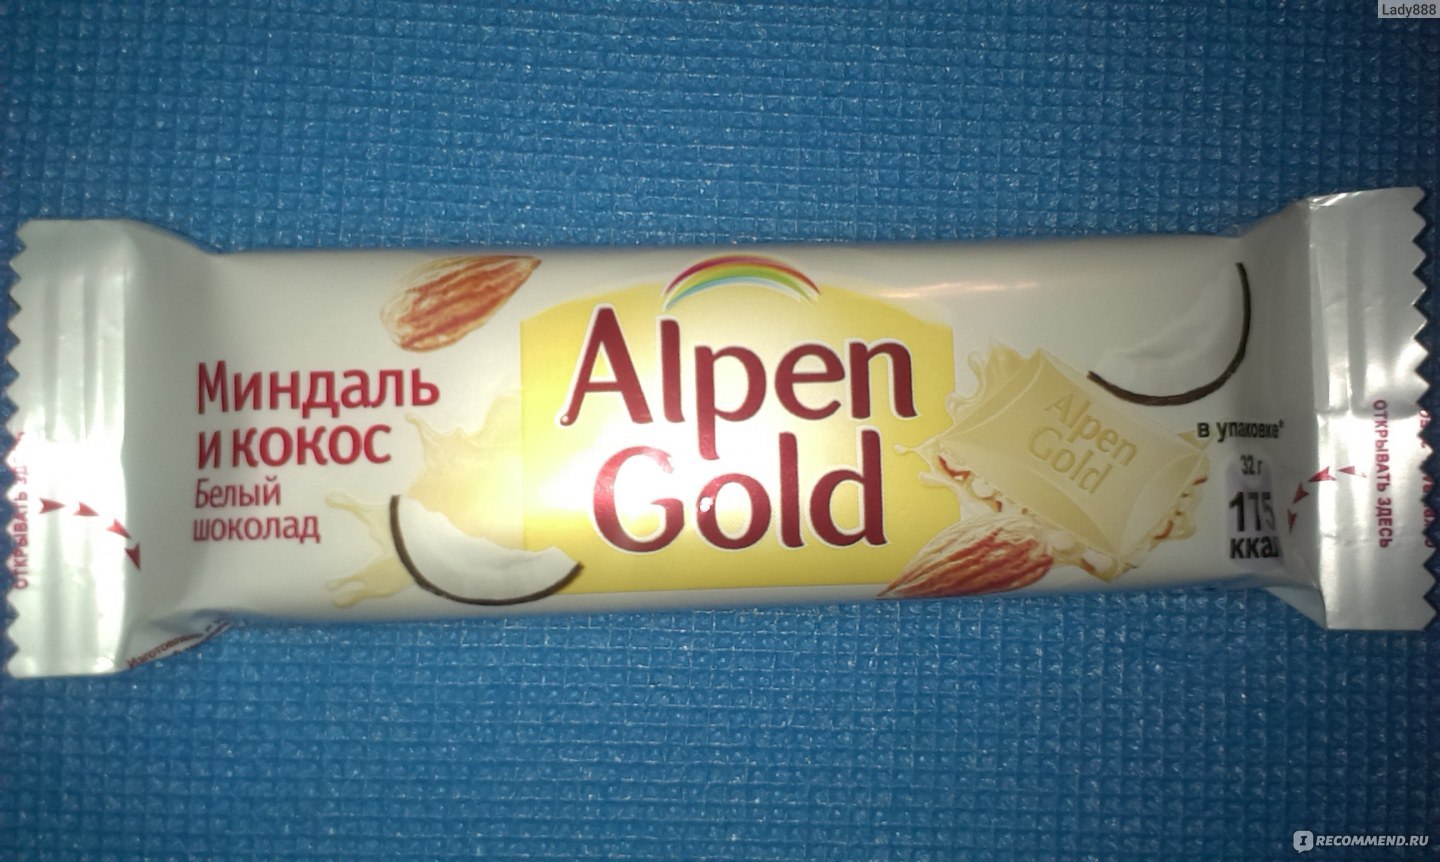 Шоколад Альпен Гольд белый миндаль/кокосовая стружка 85г